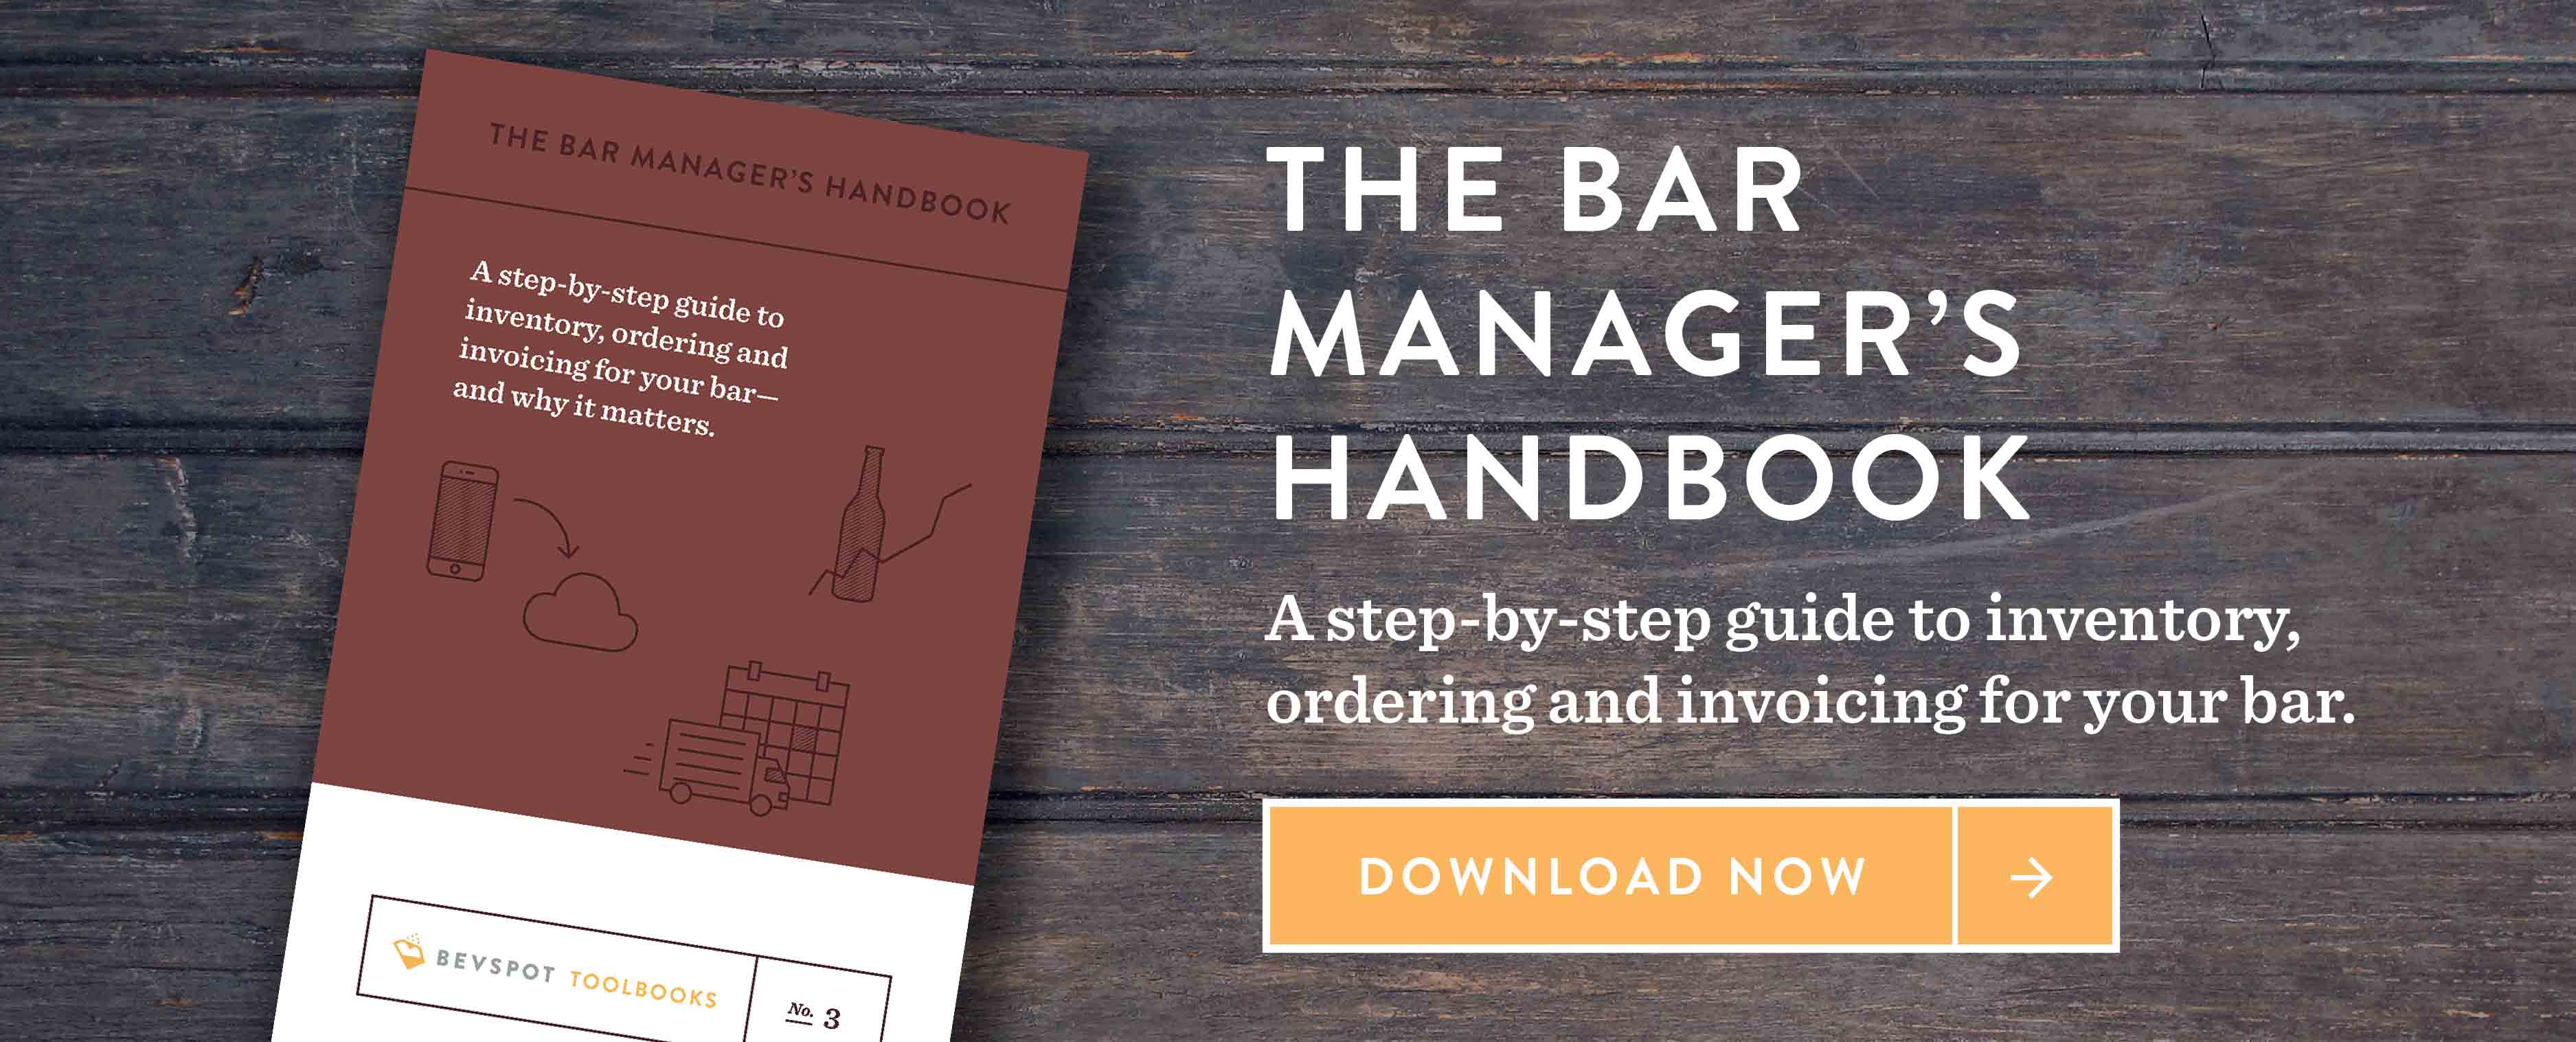 bevspot bar managers handbook